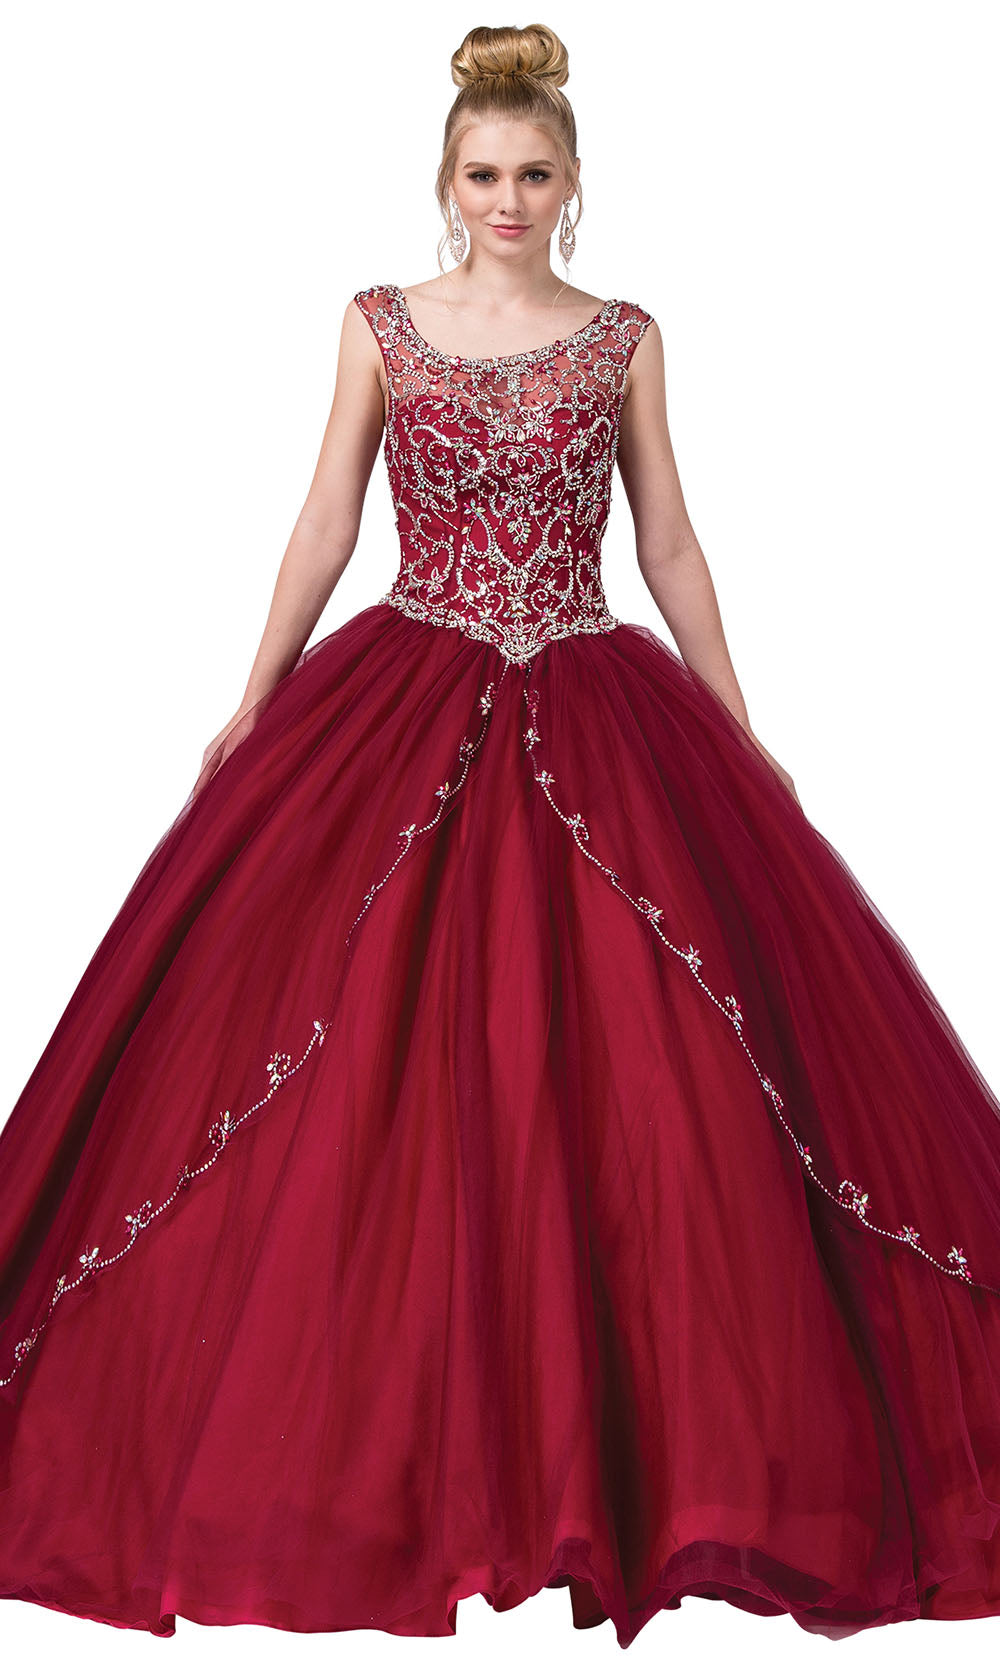 Dancing Queen - 1267 Embellished Scoop Neck Ballgown In Red